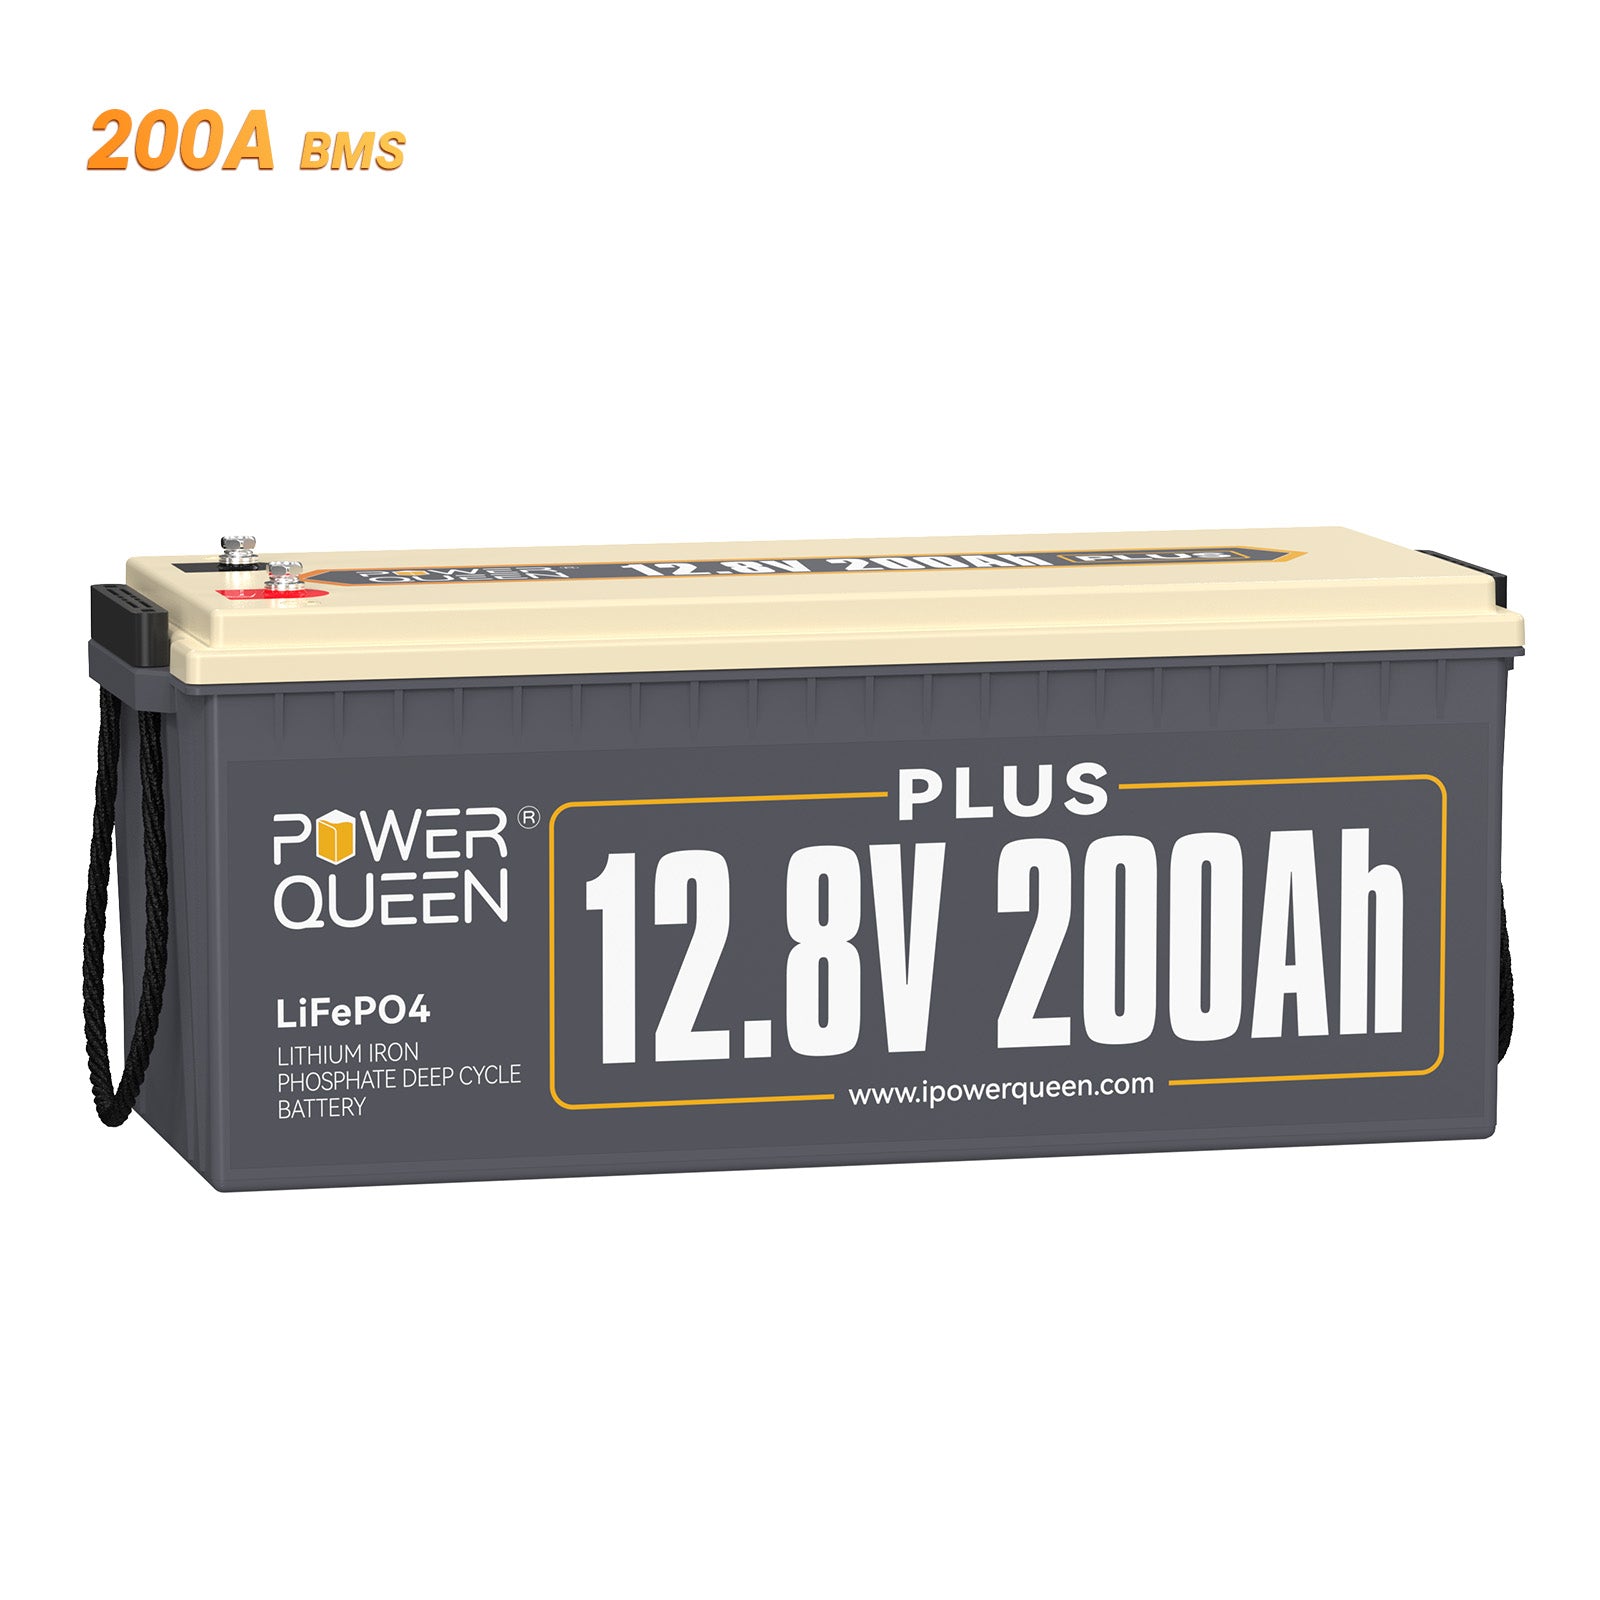 Power Queen 12V 200Ah Plus LiFePO4-batterij, ingebouwd 200A BMS